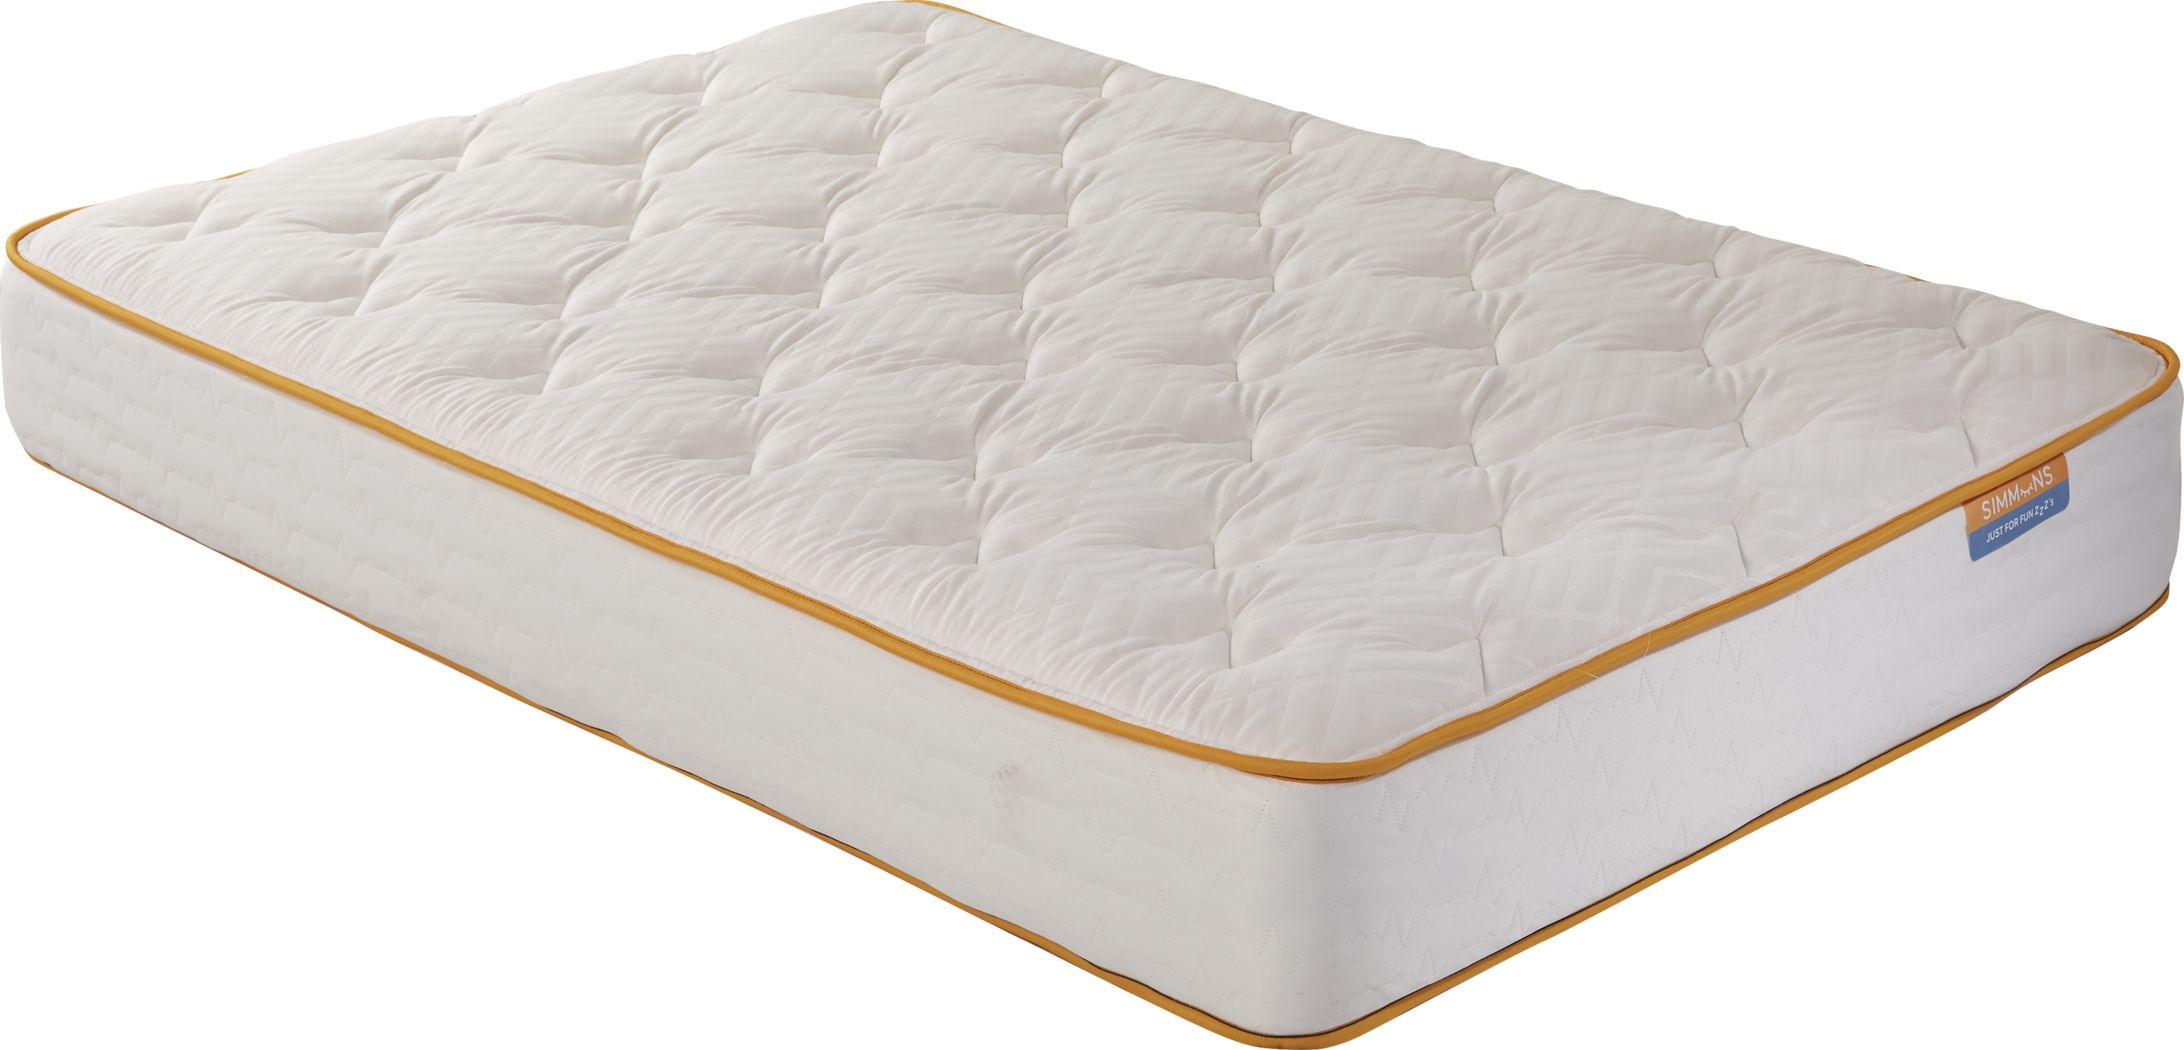 full mattress sale tampa